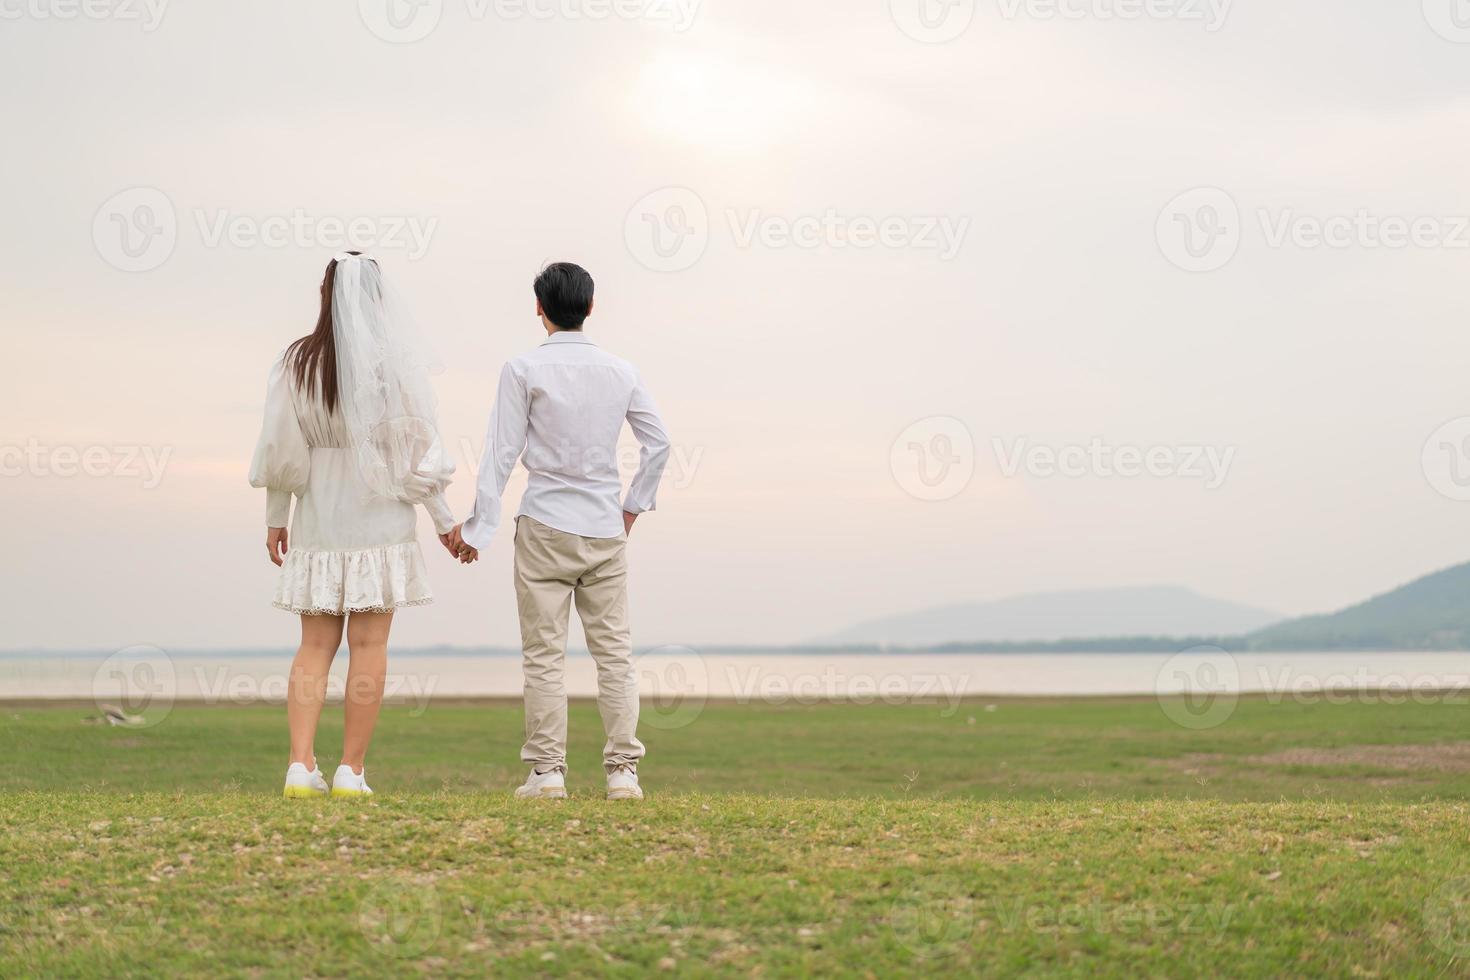 heureux jeune couple asiatique en vêtements de mariée et de marié photo